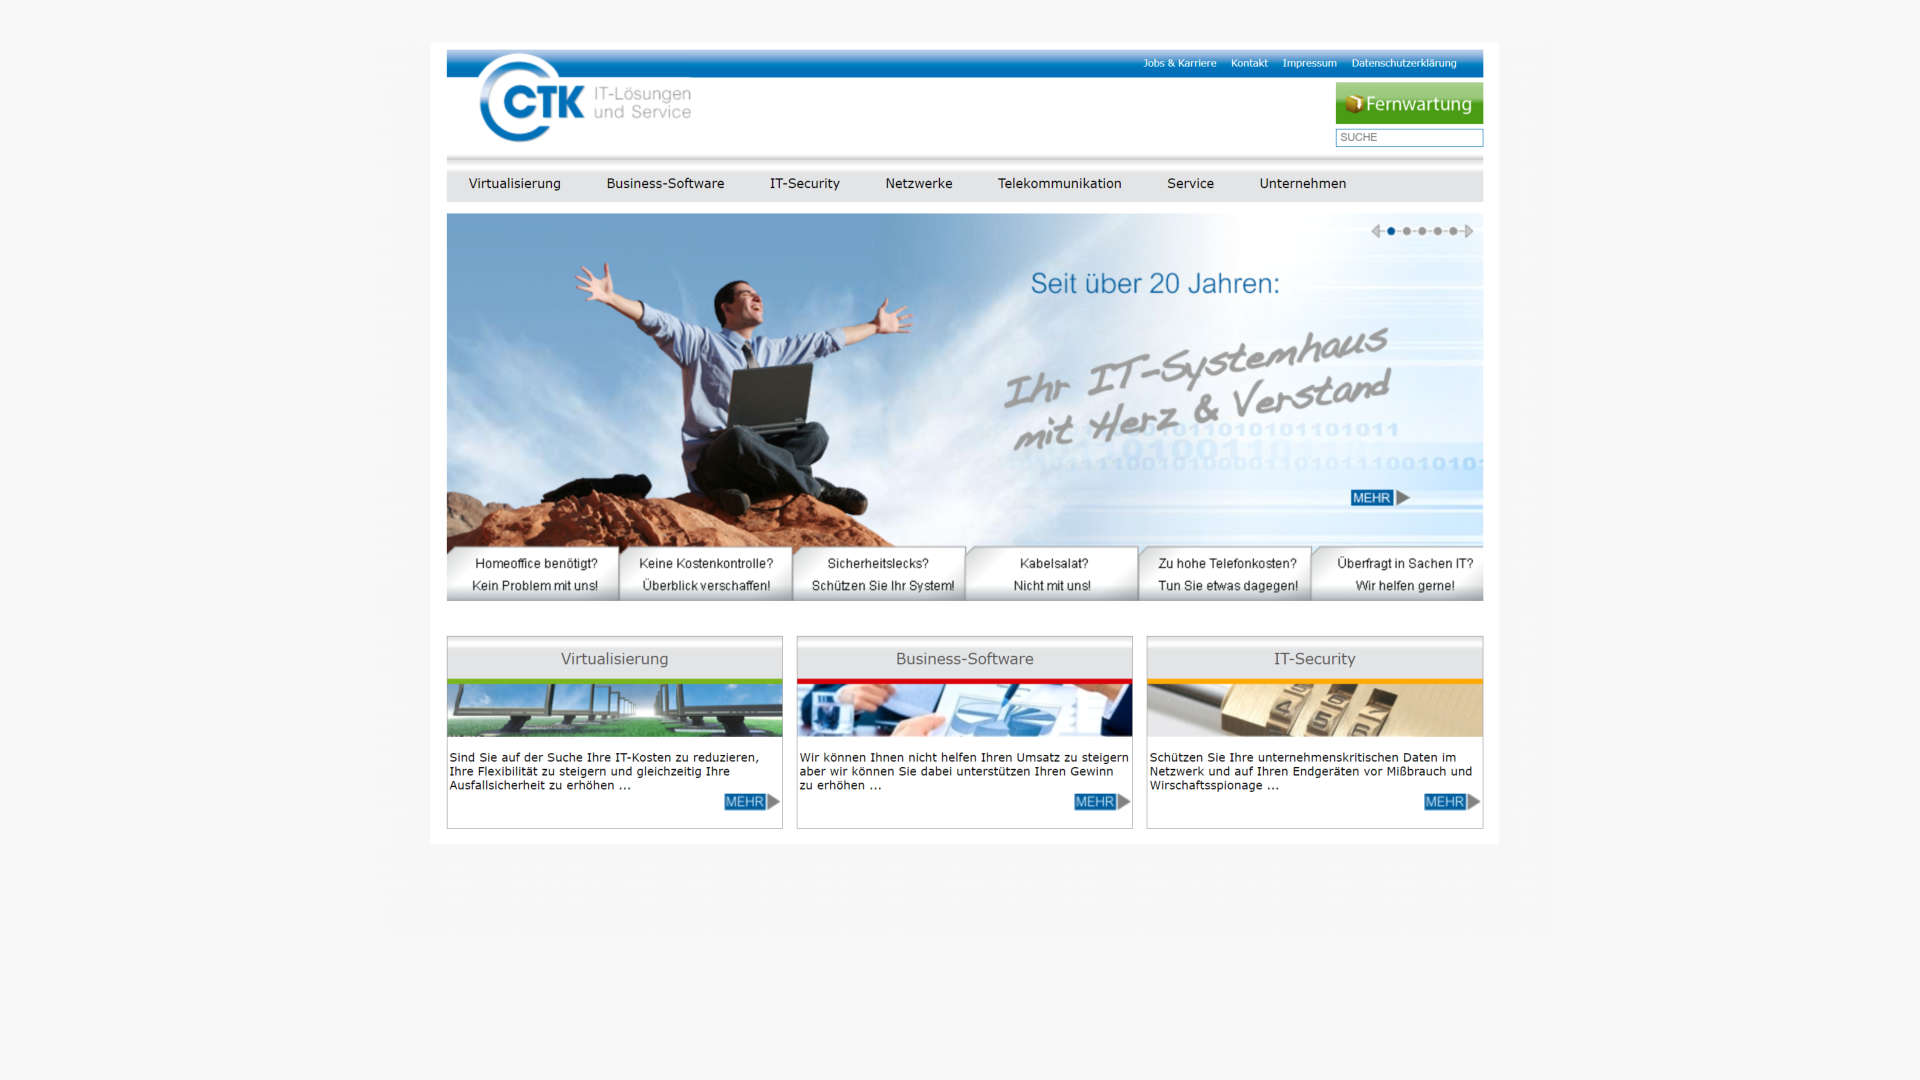 Desktop-Ansicht der Website der CTK GmbH vor dem Relaunch.